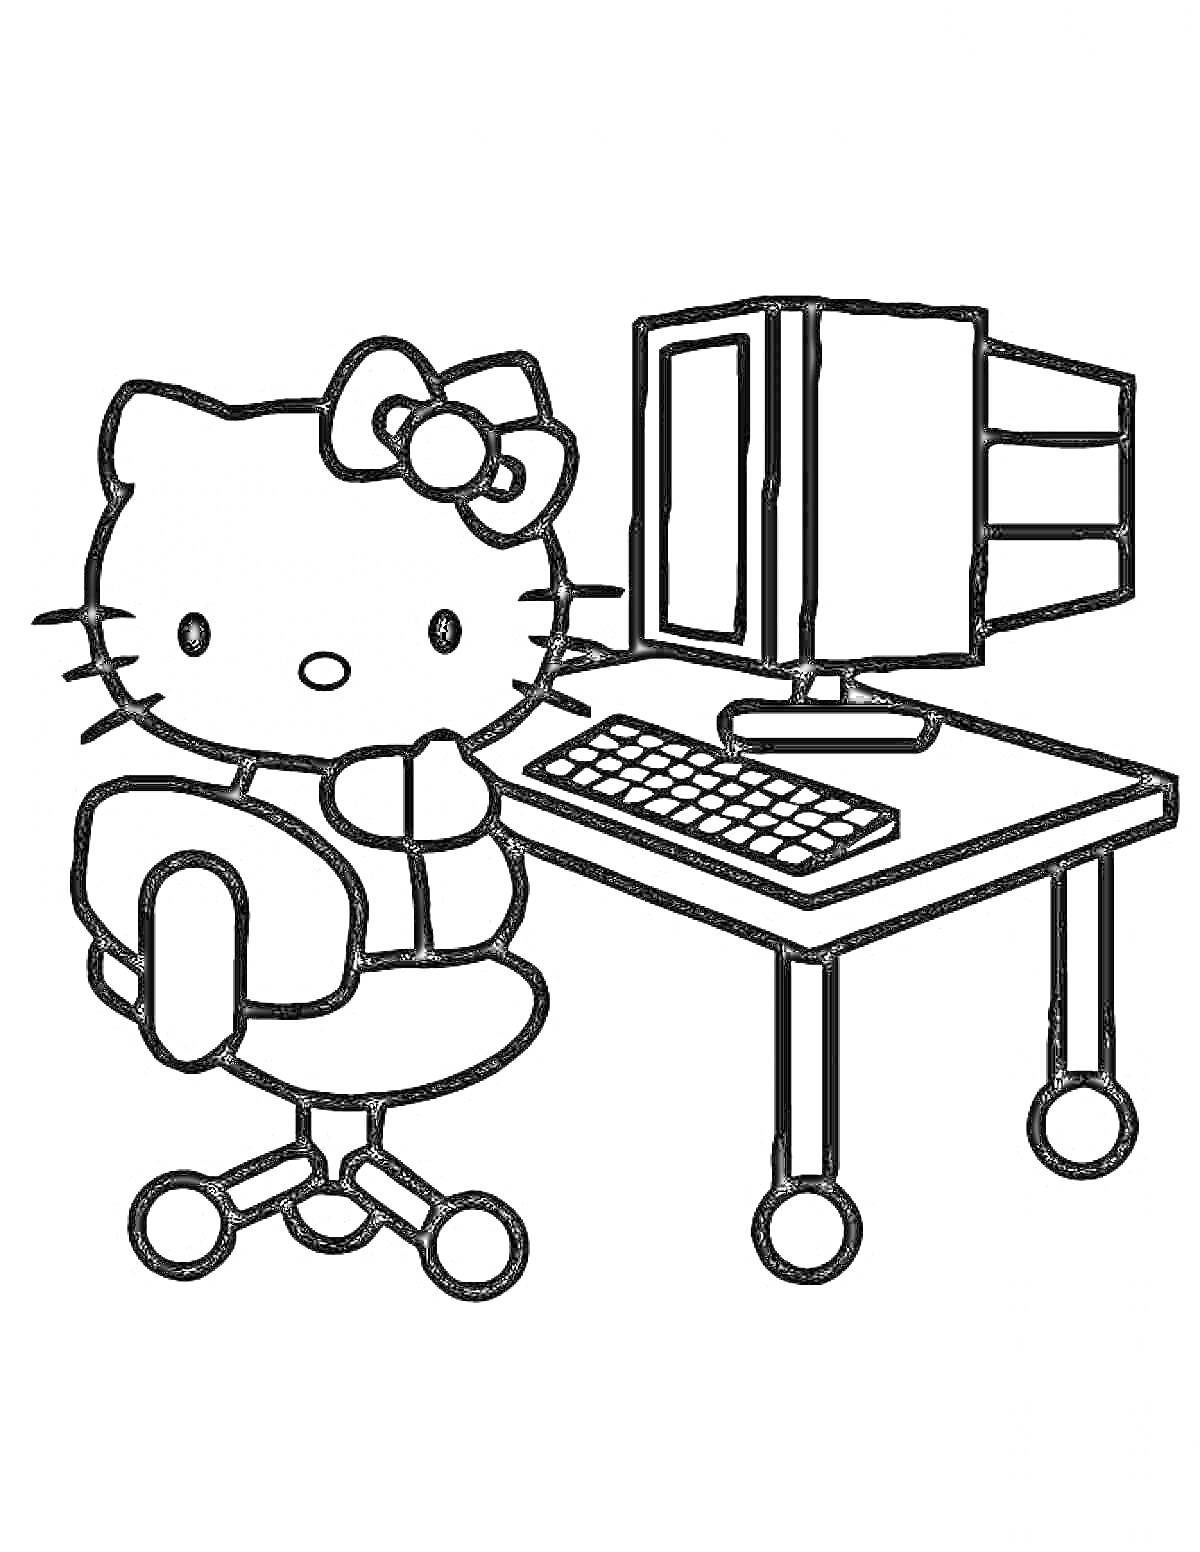 Раскраска Котёнок на стуле за компьютерным столом с компьютером и клавиатурой